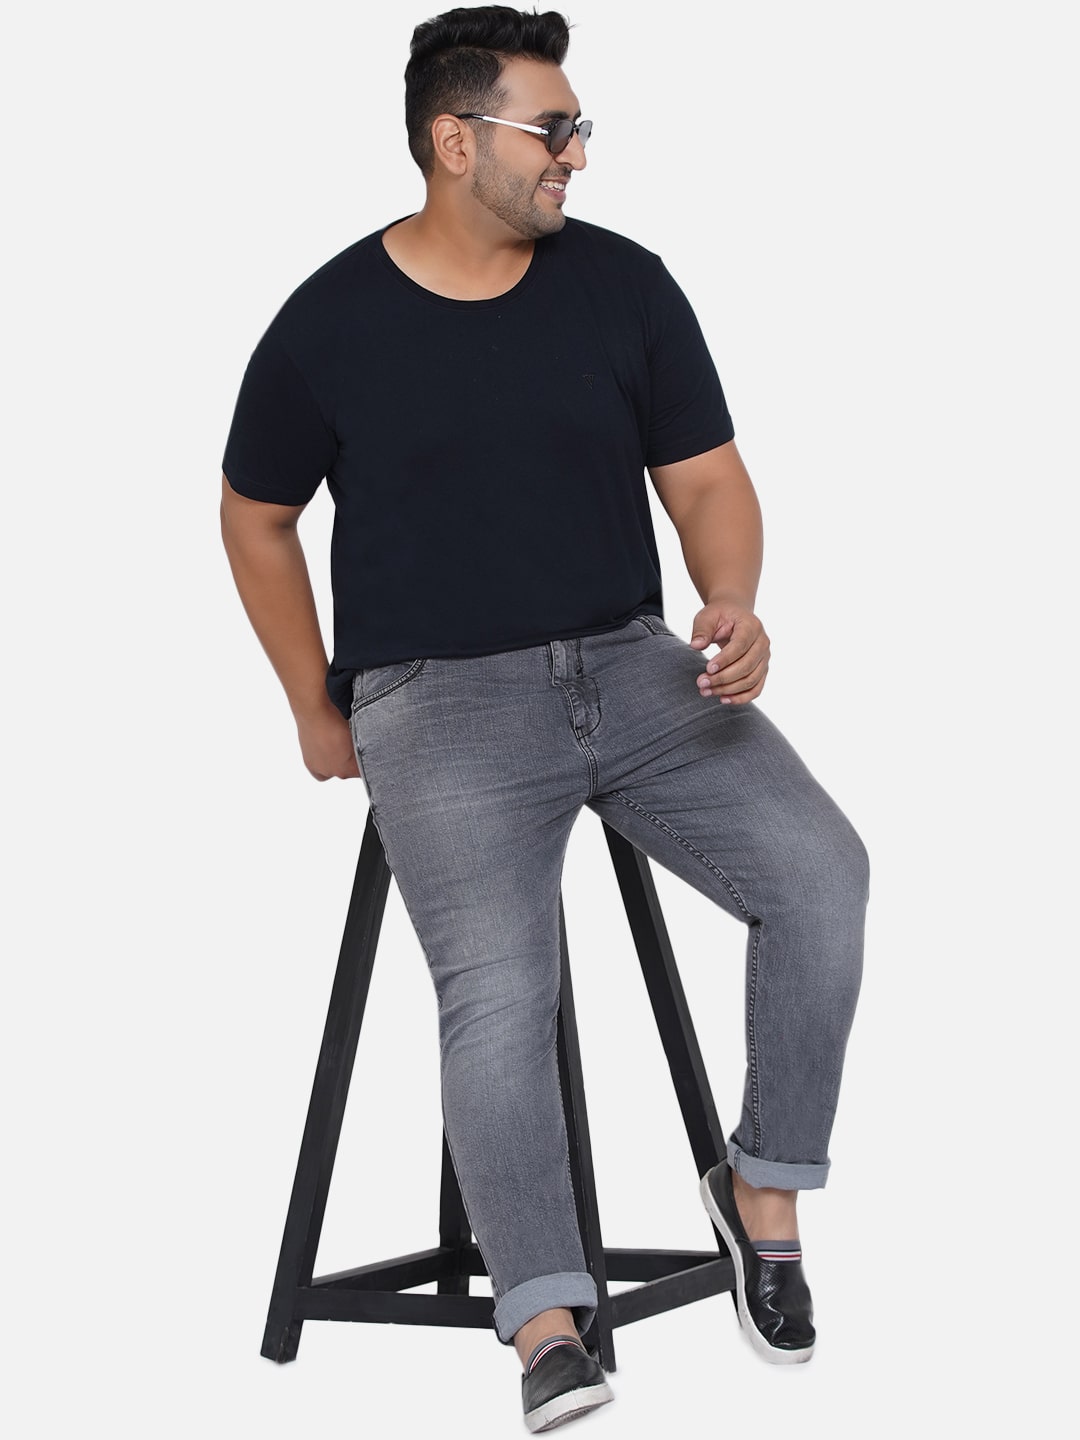 bottomwear/jeans/EJPJ25011/ejpj25011-1.jpg